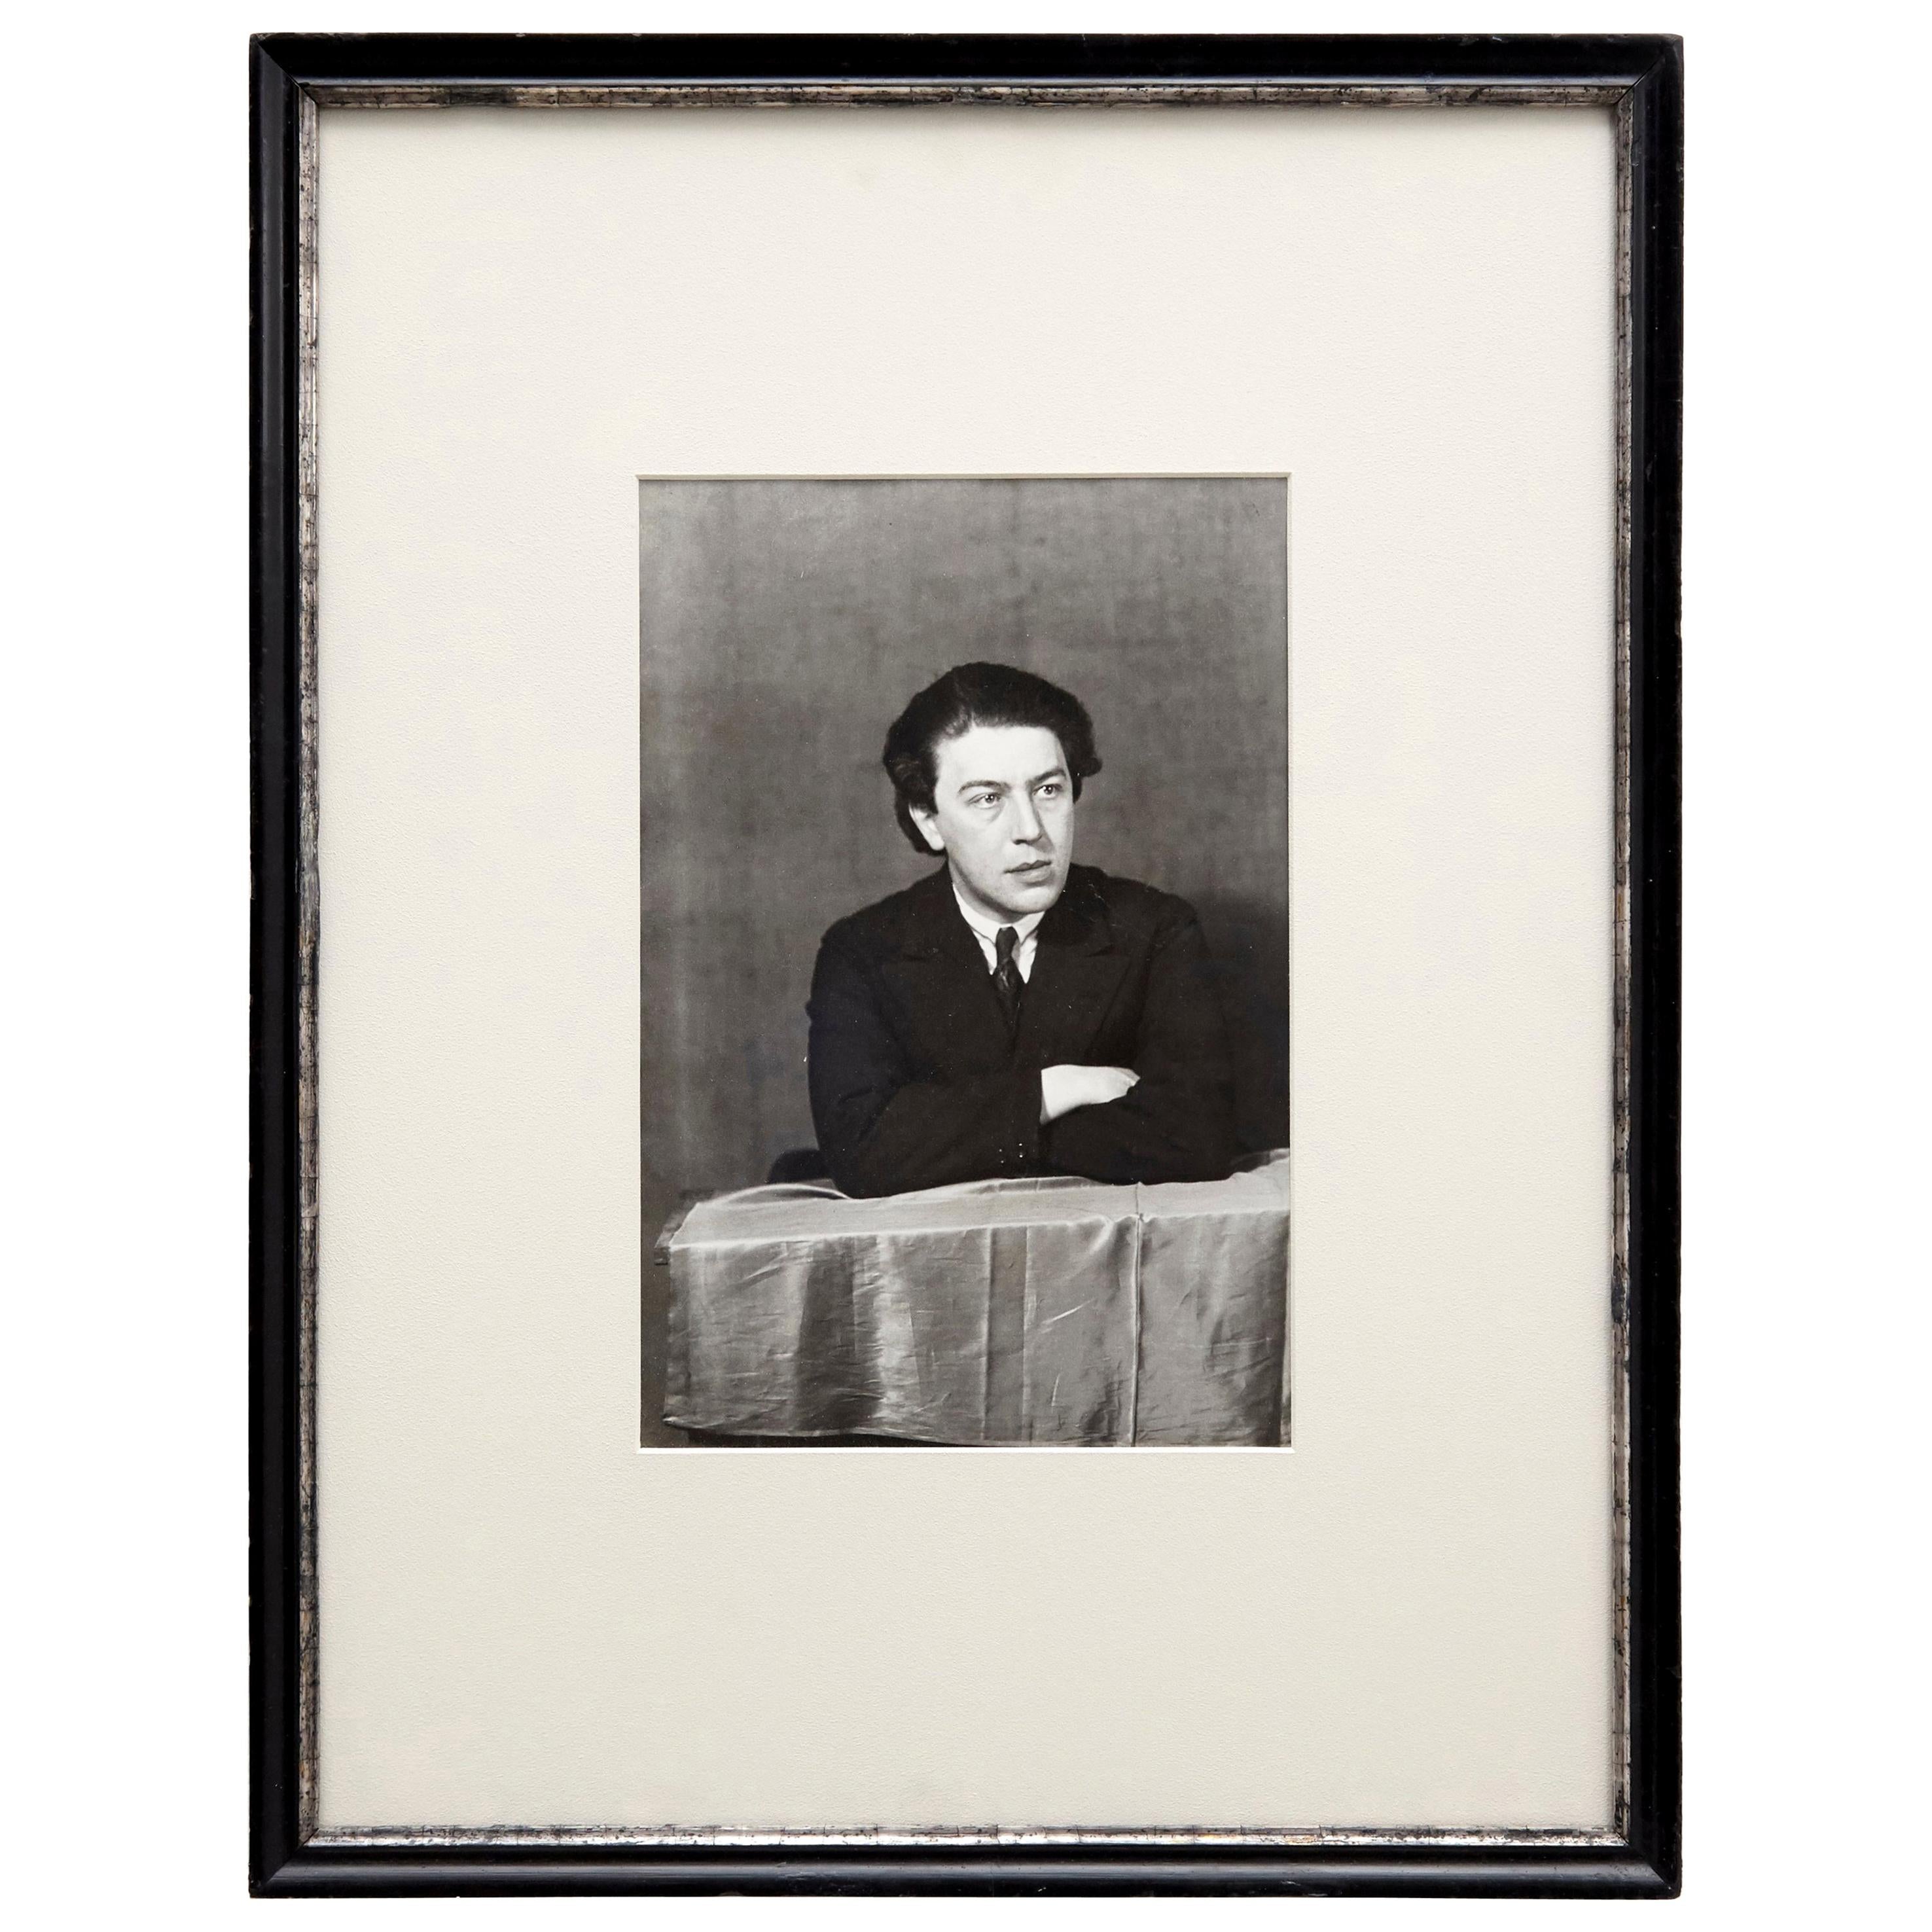 Man Ray - Photographie de portrait en noir et blanc d'Andr Breton